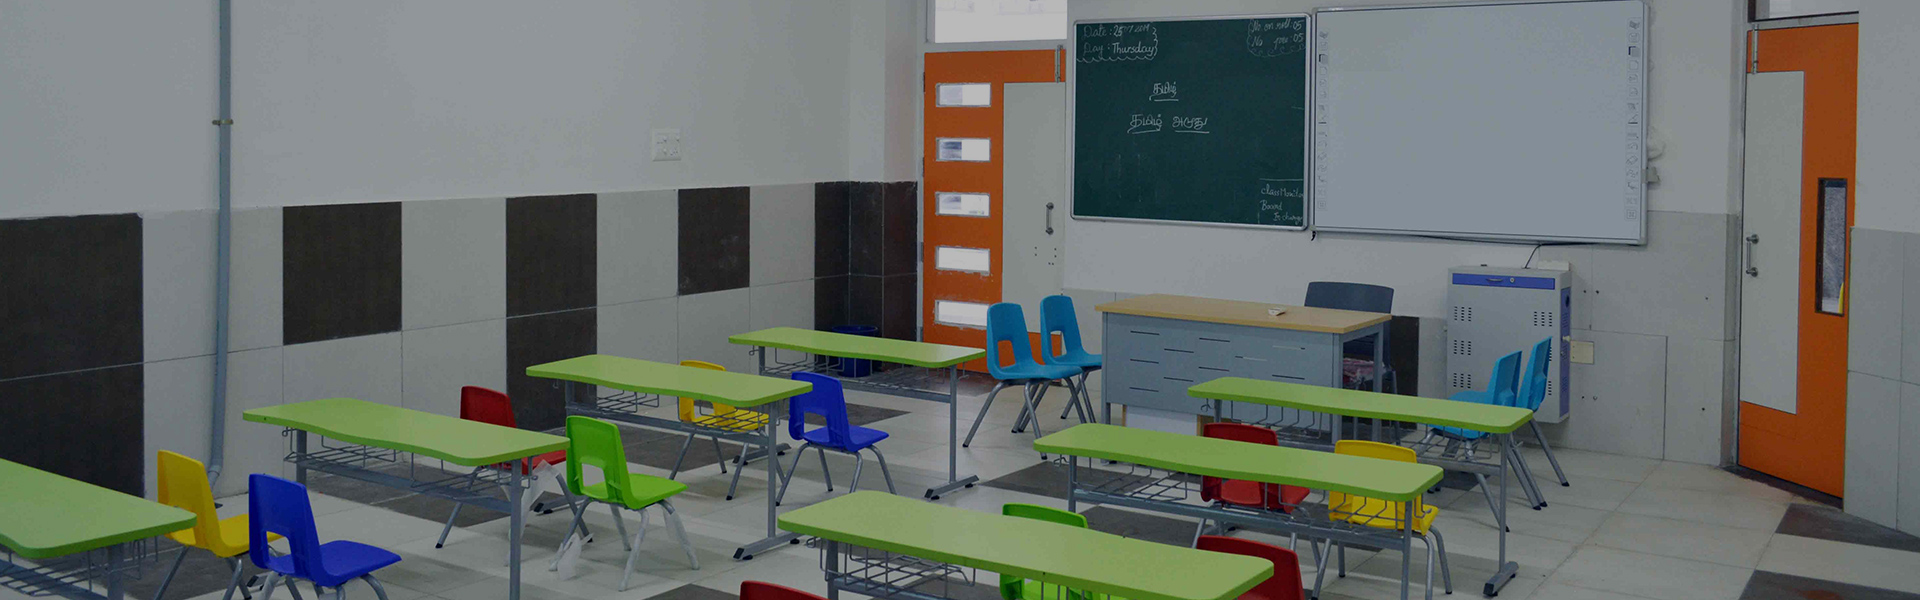 World Class Digitized Classrooms - ENPEE International School